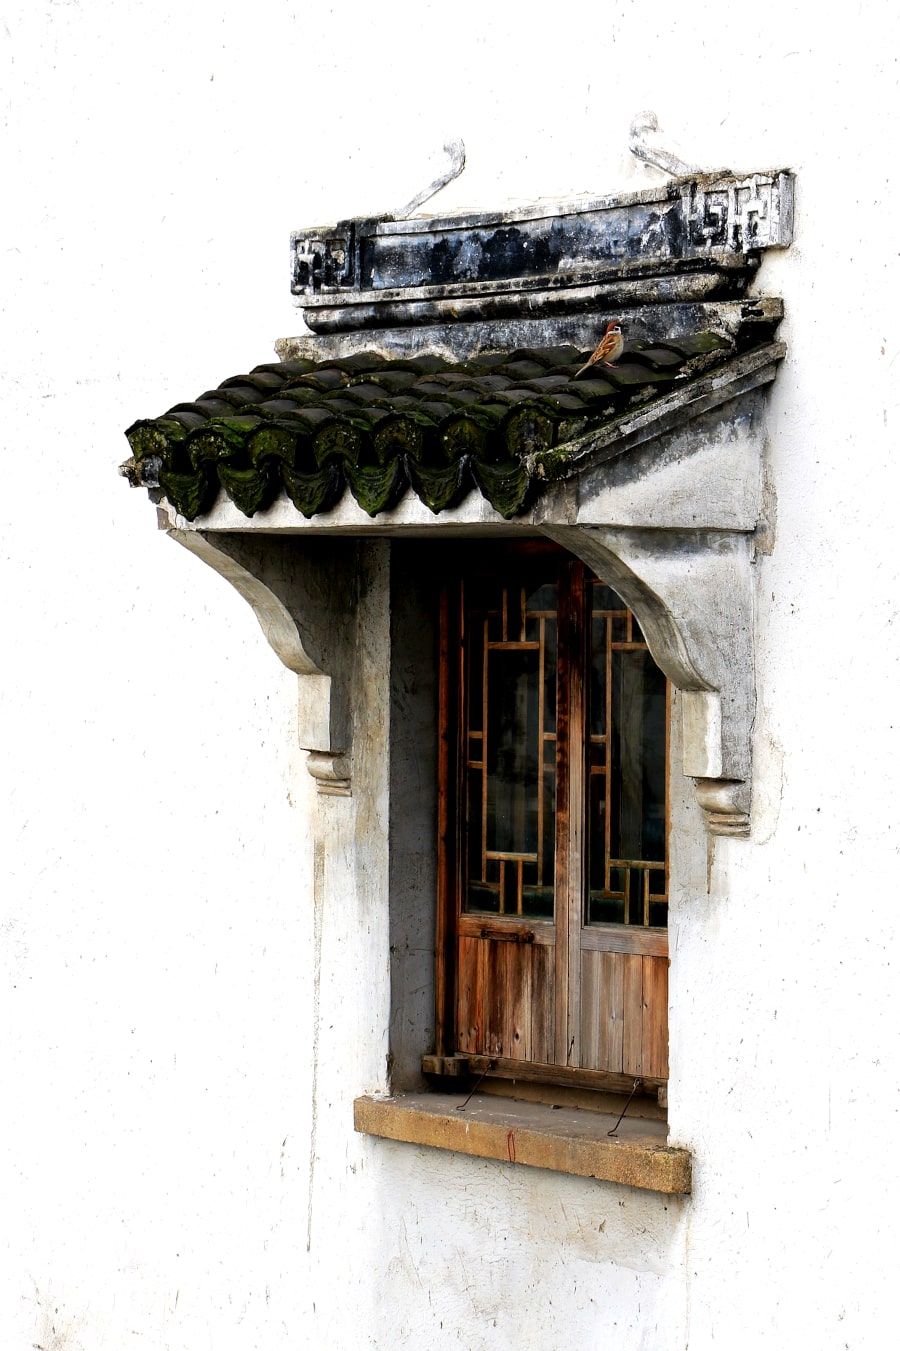 Ventana antigua en el pueblo antiguo de Fengjing cerca de la ciudad de Shanghai en China